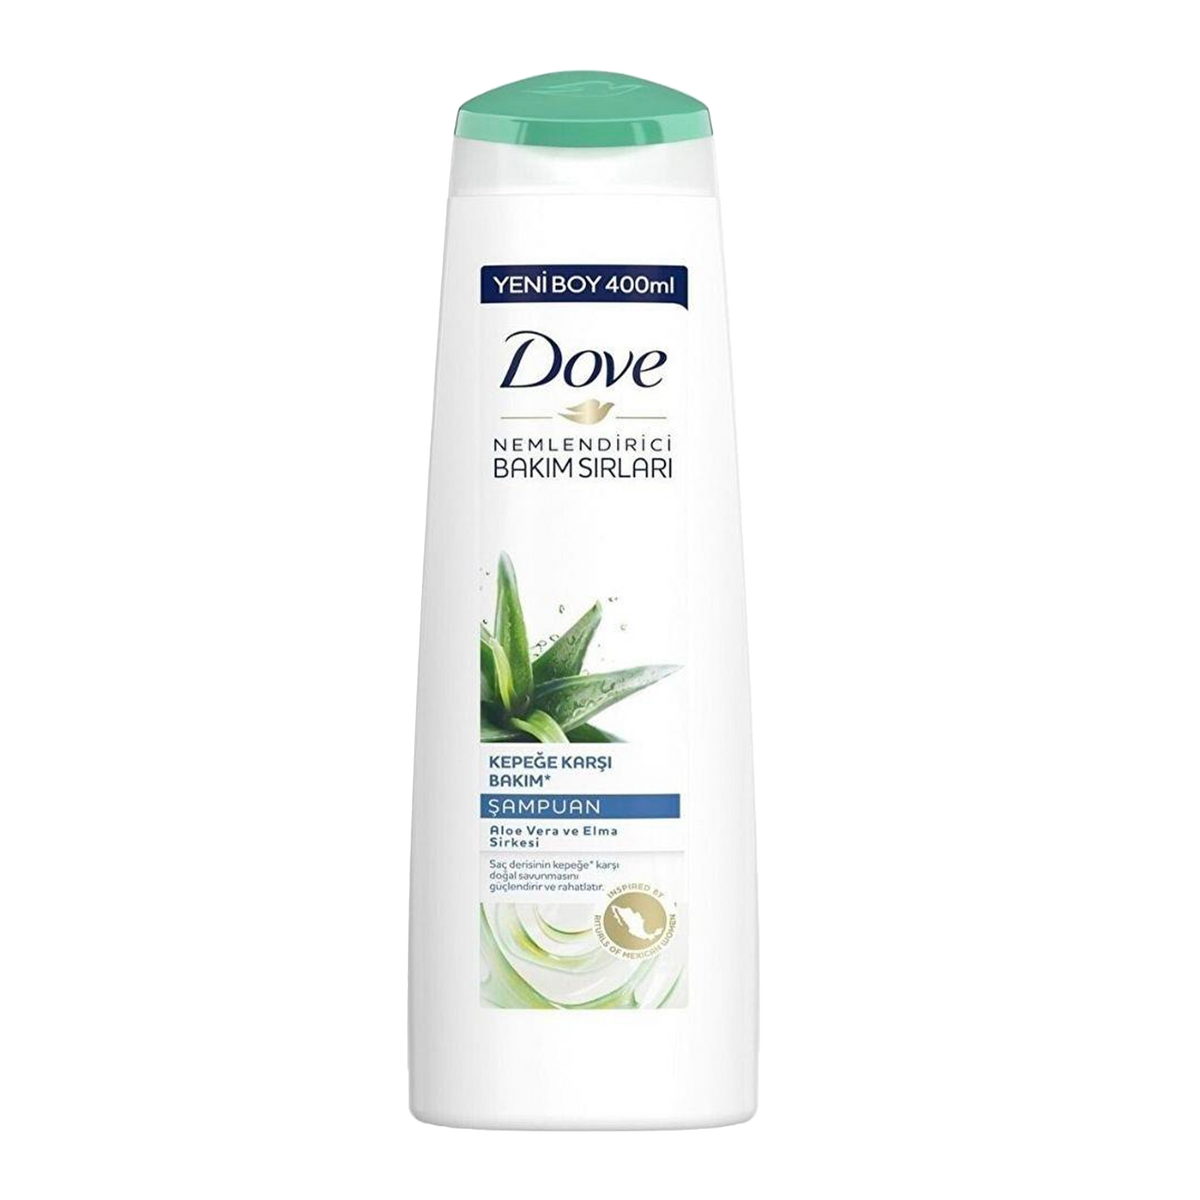 Dove Shampoo Against Dandruff Aloe Vera 400ml